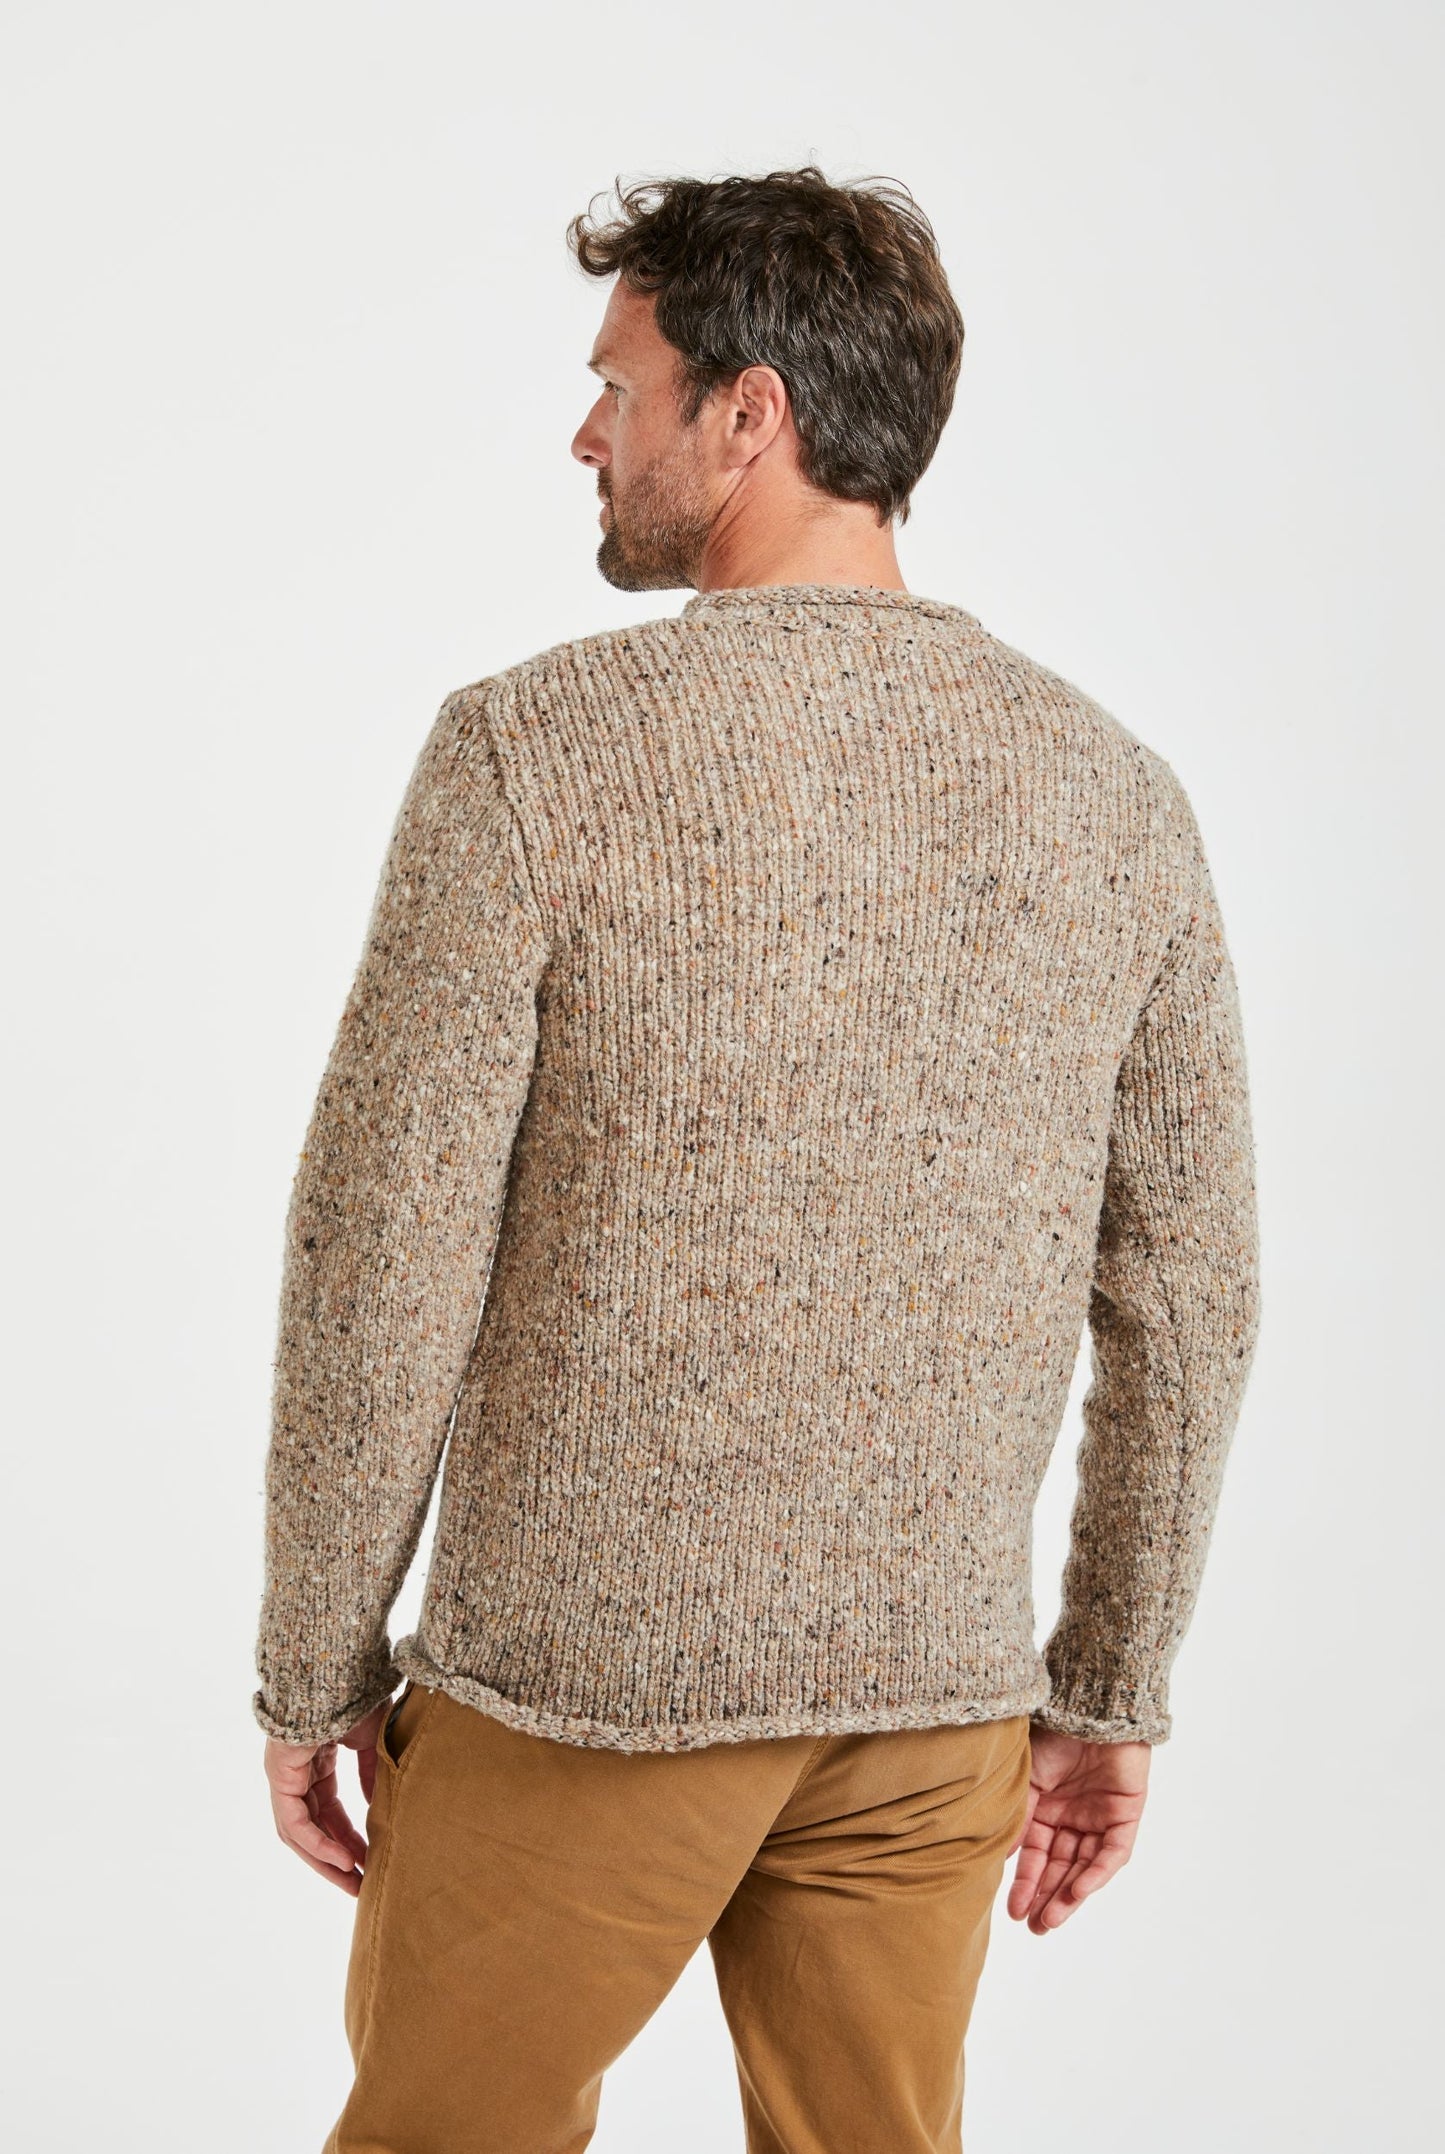 Raheen Tweed Rollneck Men's Sweater - Honey